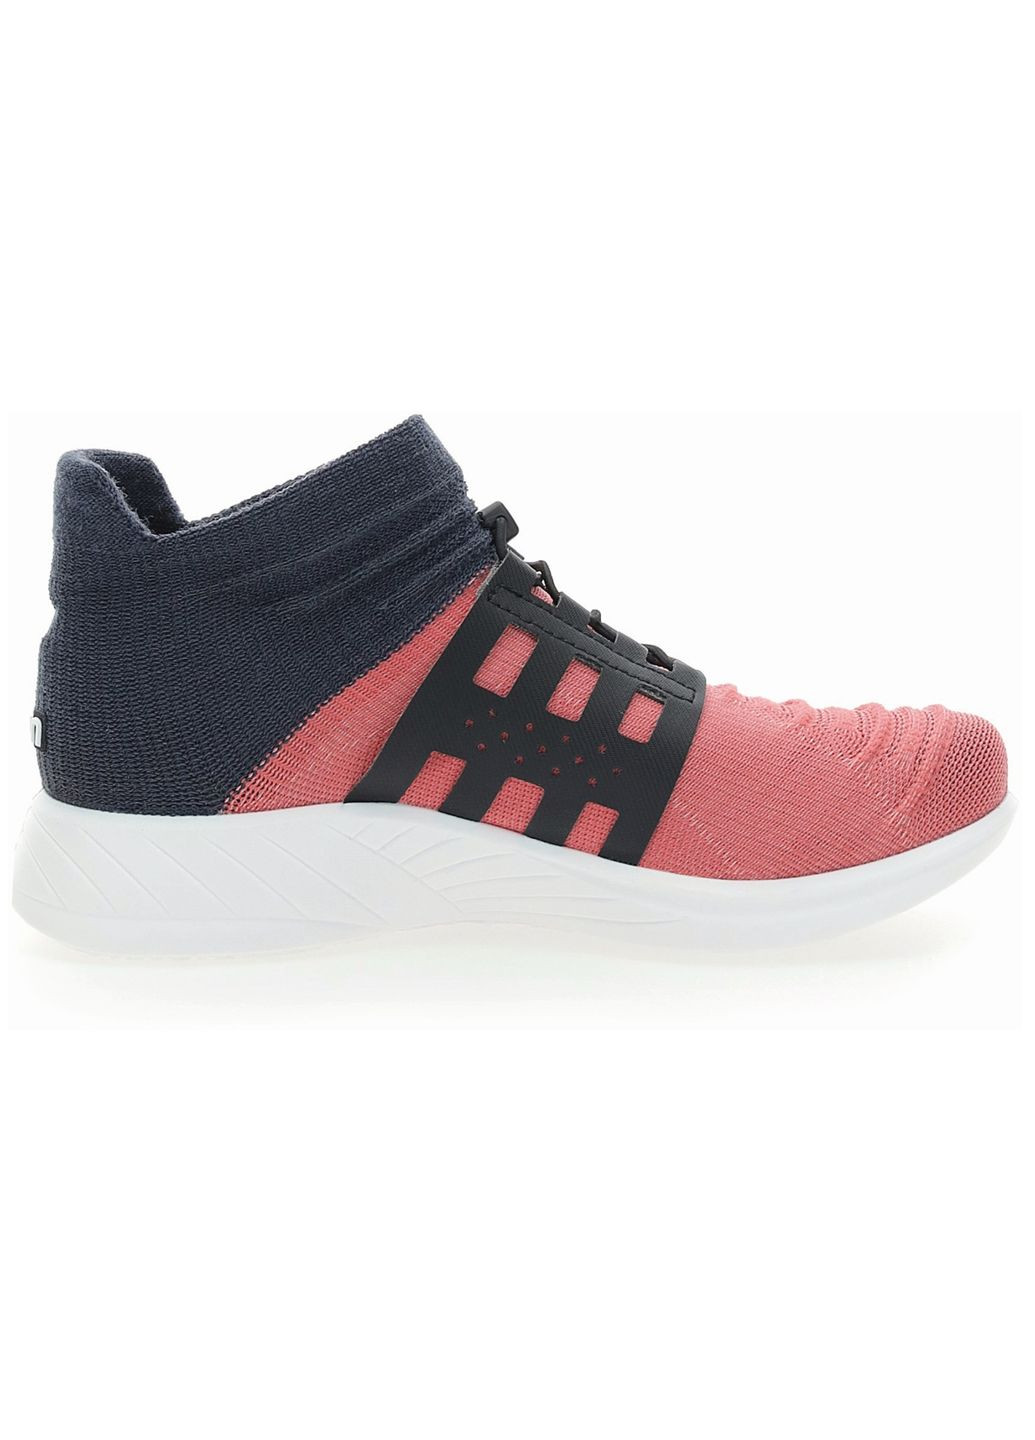 Цветные кроссовки женские UYN X-Cross Tune P402 Pink/Carbon